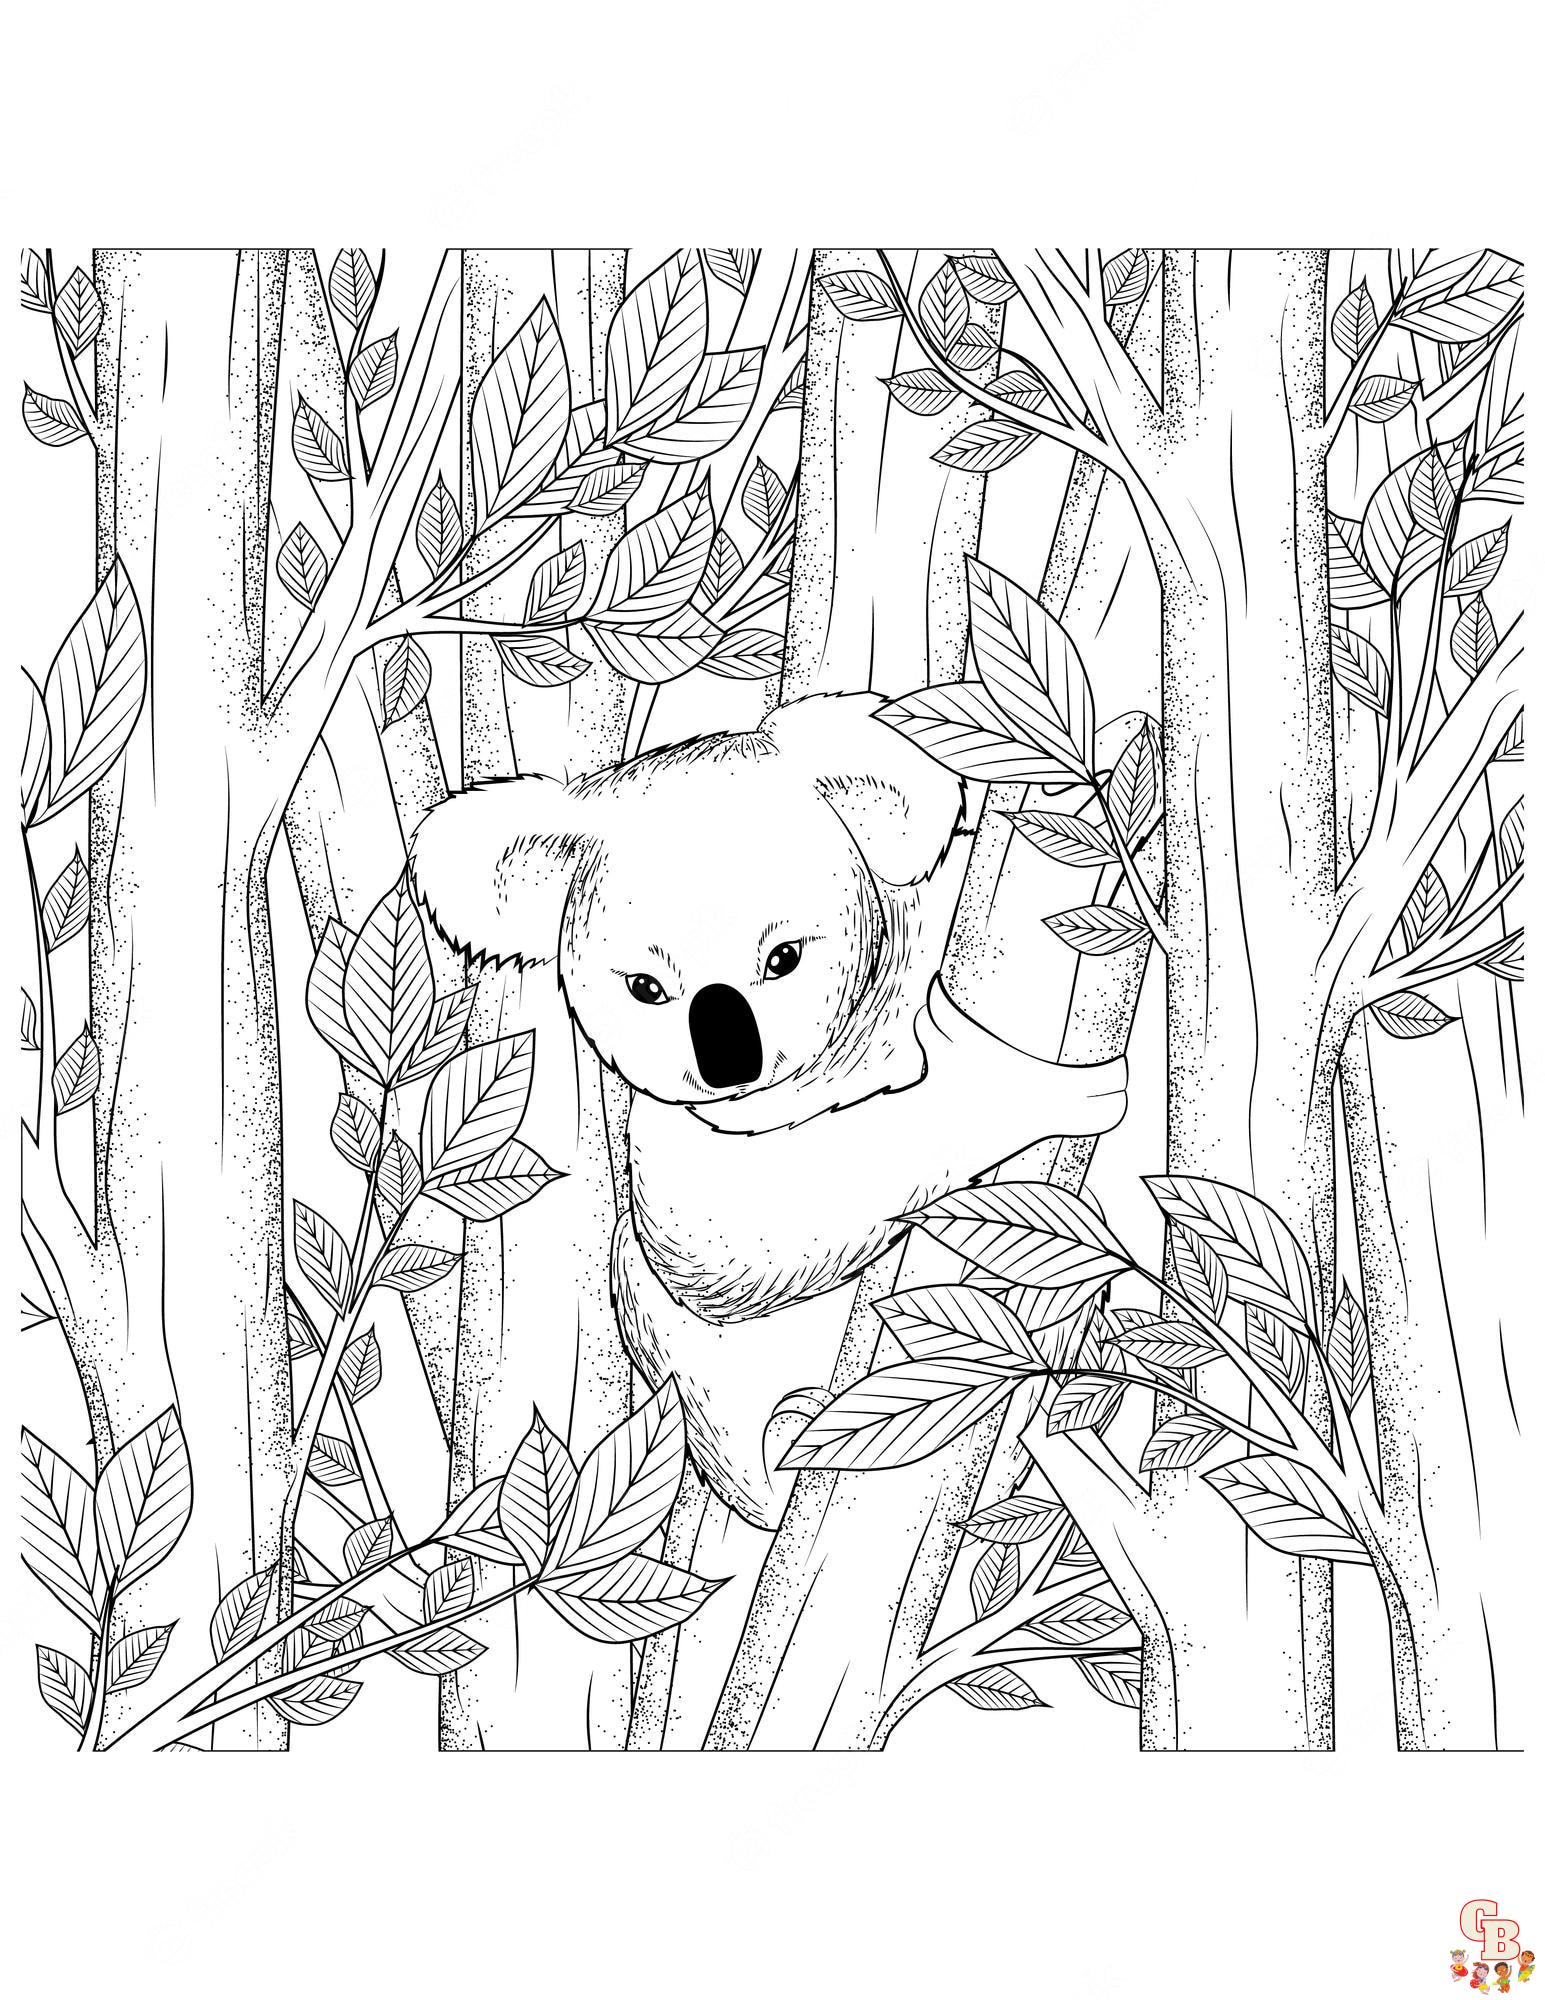 Kleurplaat koala 6 leuke en makkelijke opties voor kinderen